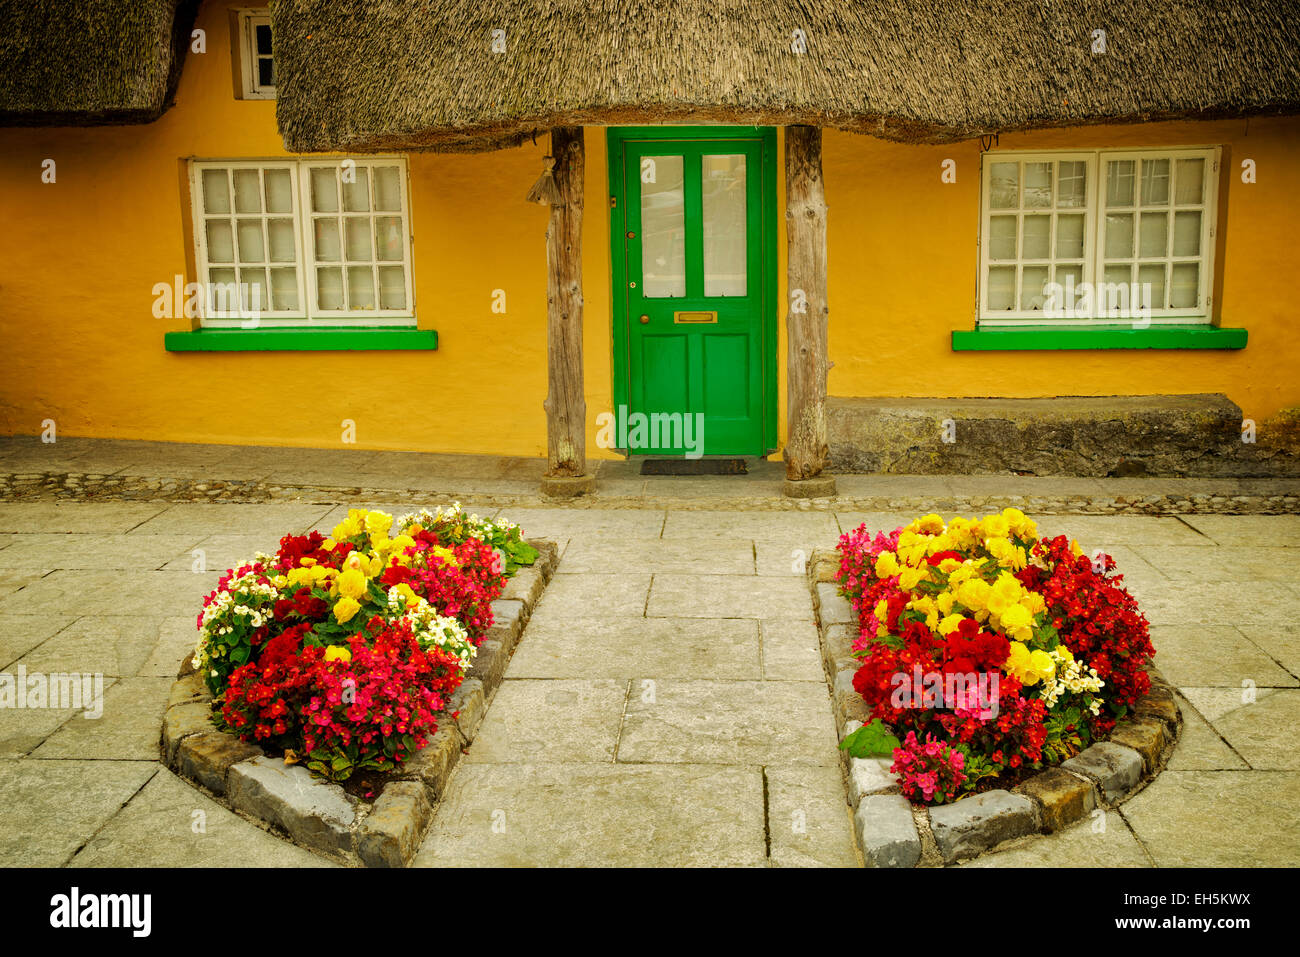 Strohgedeckten Wochenendhäusern und Blumen in Adare, Irland. Stockfoto